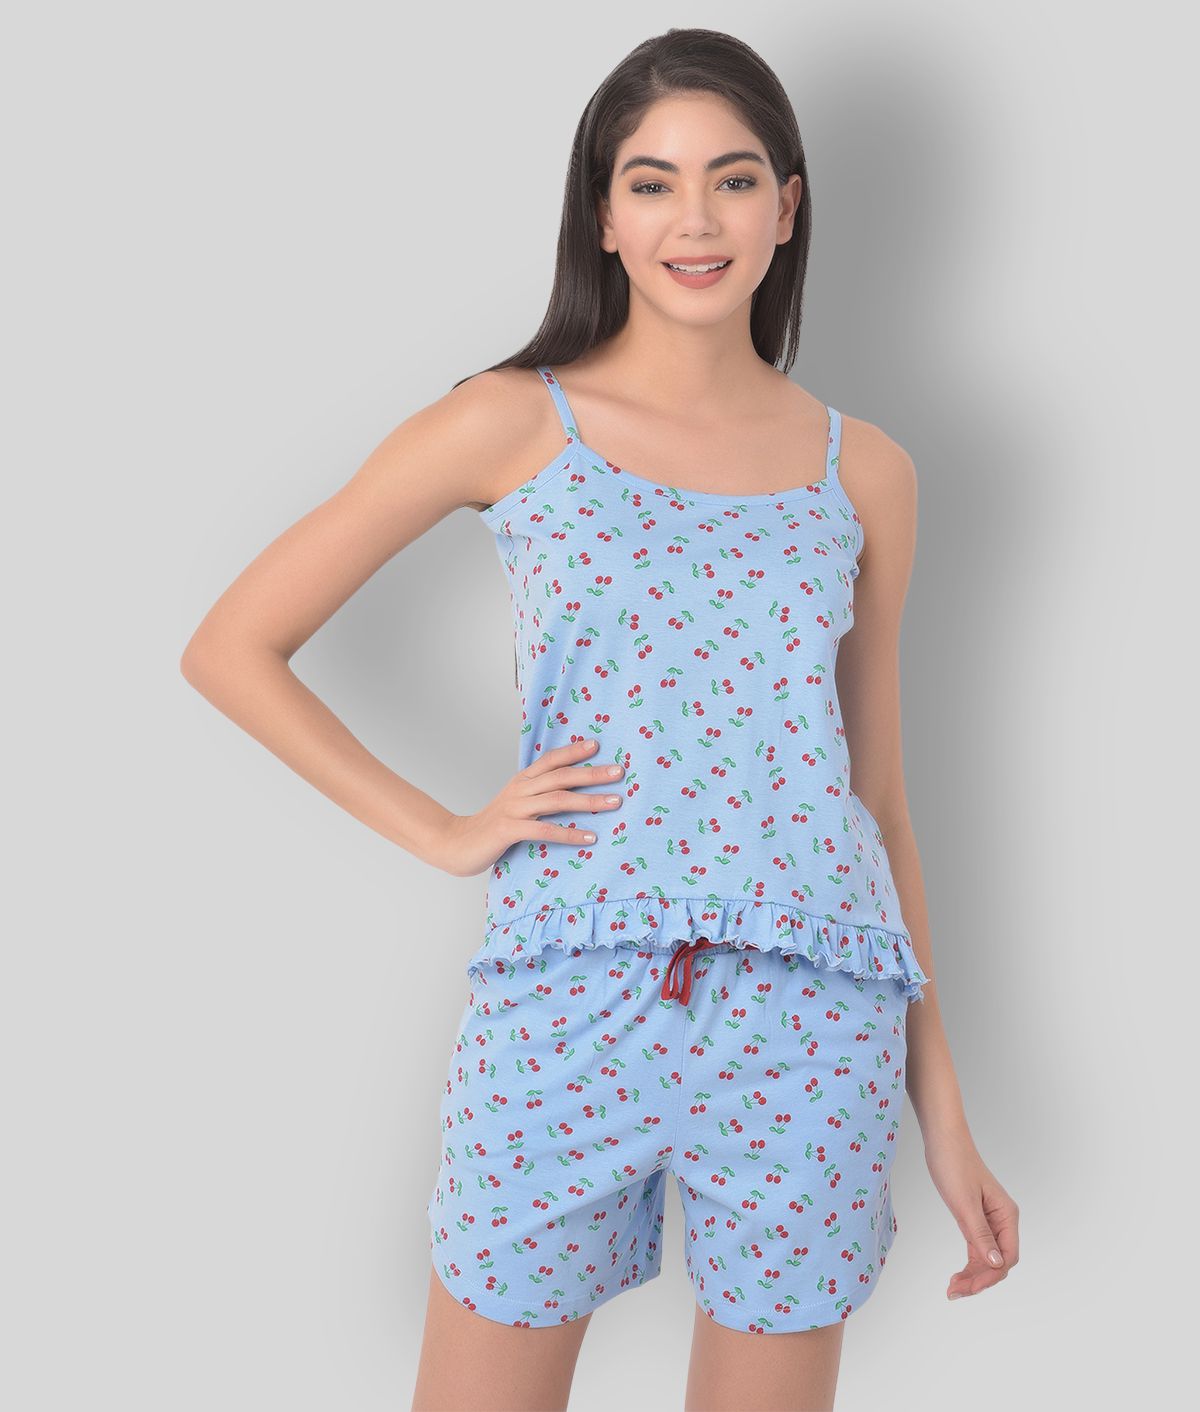     			Clovia - Blue Cotton Women's Nightwear Nightsuit Sets